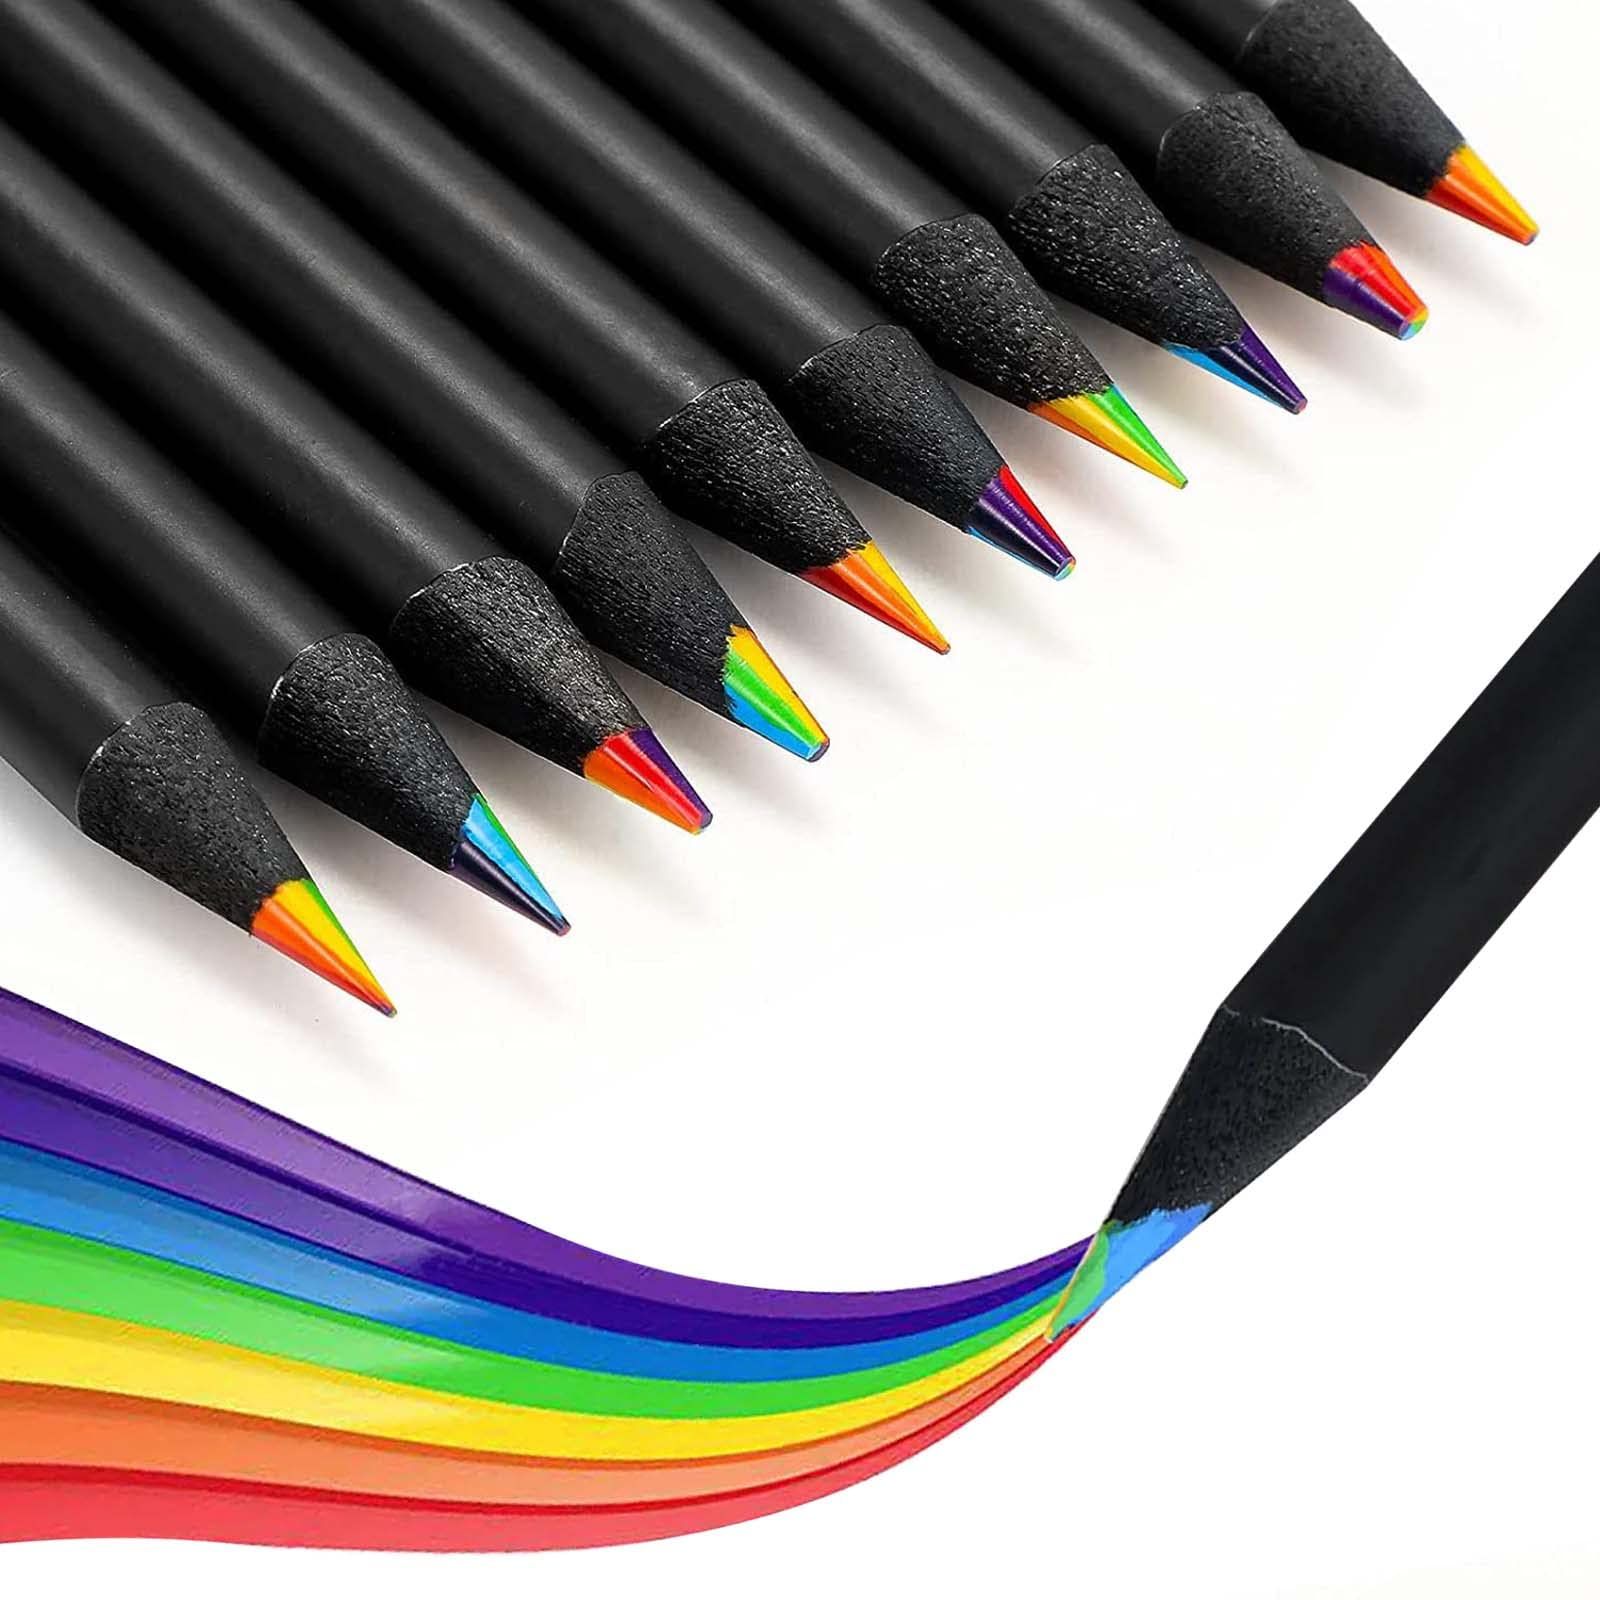 【完璧な選択】プロの芸術家であれ、アマチュア芸術家であれ、軽い趣味として着色しても、愛する人に心のこもった贈り物をしたいと思っても、これらの虹色鉛筆はあなたが必要としているものです！【高品質で長持ち】この色鉛筆セットは高品質で、耐久性のある黒木で作られており、常に使用しても使用寿命が長くなります。 定期的にピークが色鉛筆を切ってくれます!【華やかな虹色】これらの木製鉛筆は、ユニークな7 in 1デザインと華やかな虹色を採用し、どんなアイテムにも面白く、芸術的な雰囲気をプラスしています！7色の絵と書くことで、あなたの驚くべき創作で誰もが印象的になります！【多用途と多機能】これらのクールな鉛筆をさまざまなDIYプロジェクト、アート、手工芸品、絵画、着色、スケッチ、肖像、さまざまな芸術品に使用して、これらの結果が好きになることを確認できます！【理想のプレゼント】自分のためにこの色鉛筆12点セットを注文したり、愛する人へのユニークなプレゼントアイデアとして、あなたはきっと彼らの賞賛を勝ち取ることができます！子供や大人、プロ、初心者、誰もがこれらの黒木鉛筆が好きです！